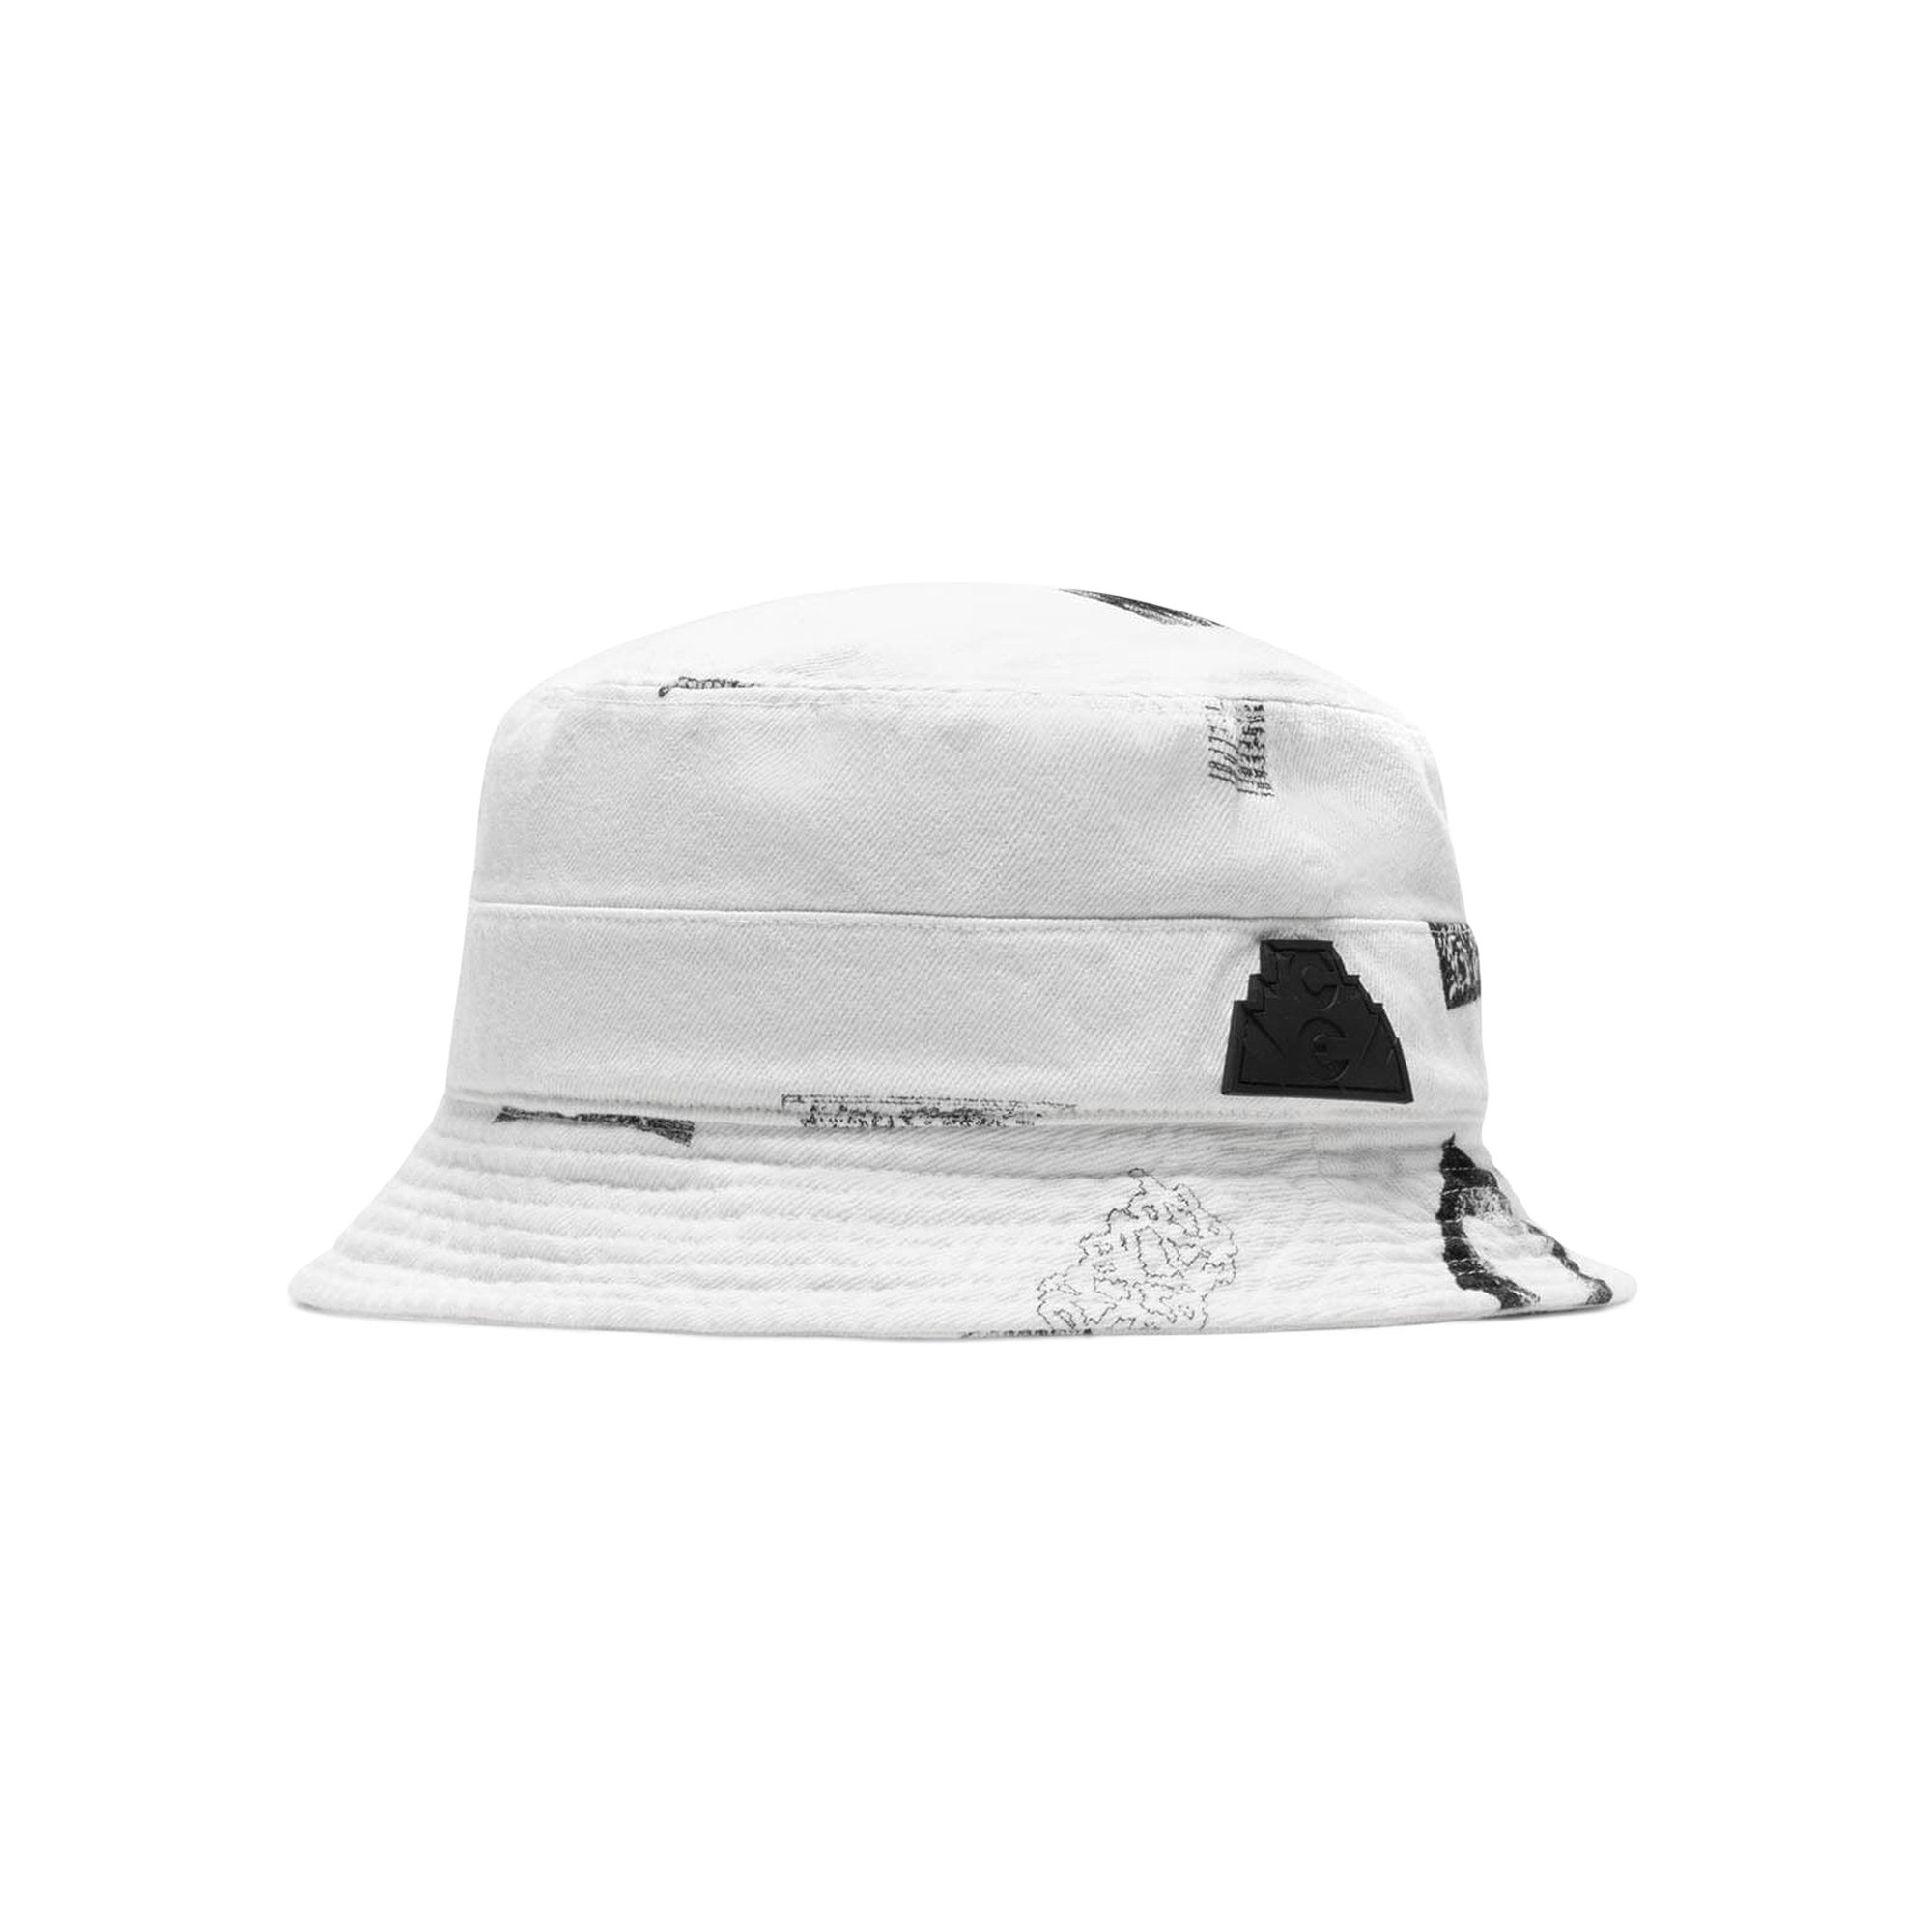 Buy Cav Empt Overdye FK Sheets Hat 'White' - CES23G06 WHIT | GOAT IT